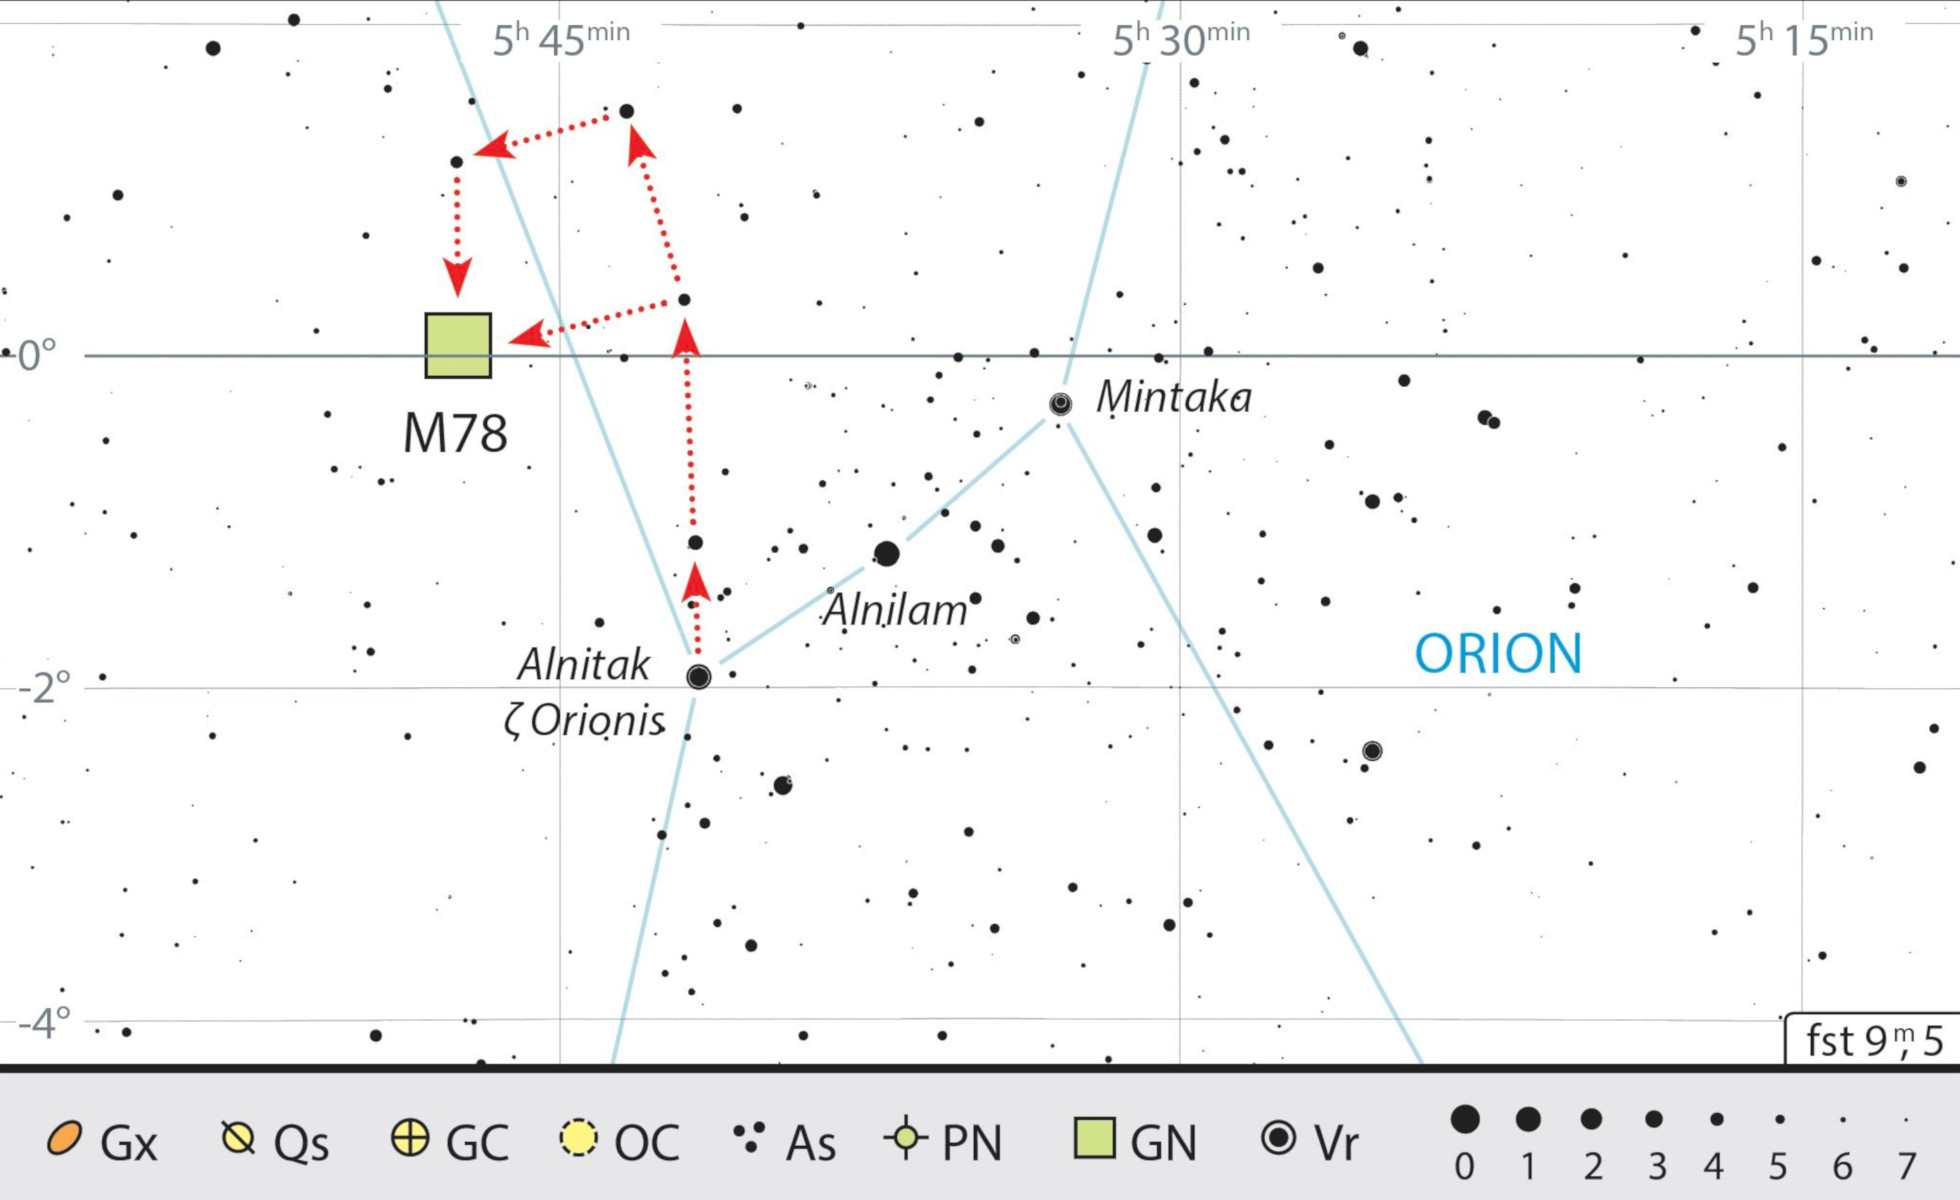 Carte de recherche pour M 78 dans la constellation d’Orion. J. Scholten